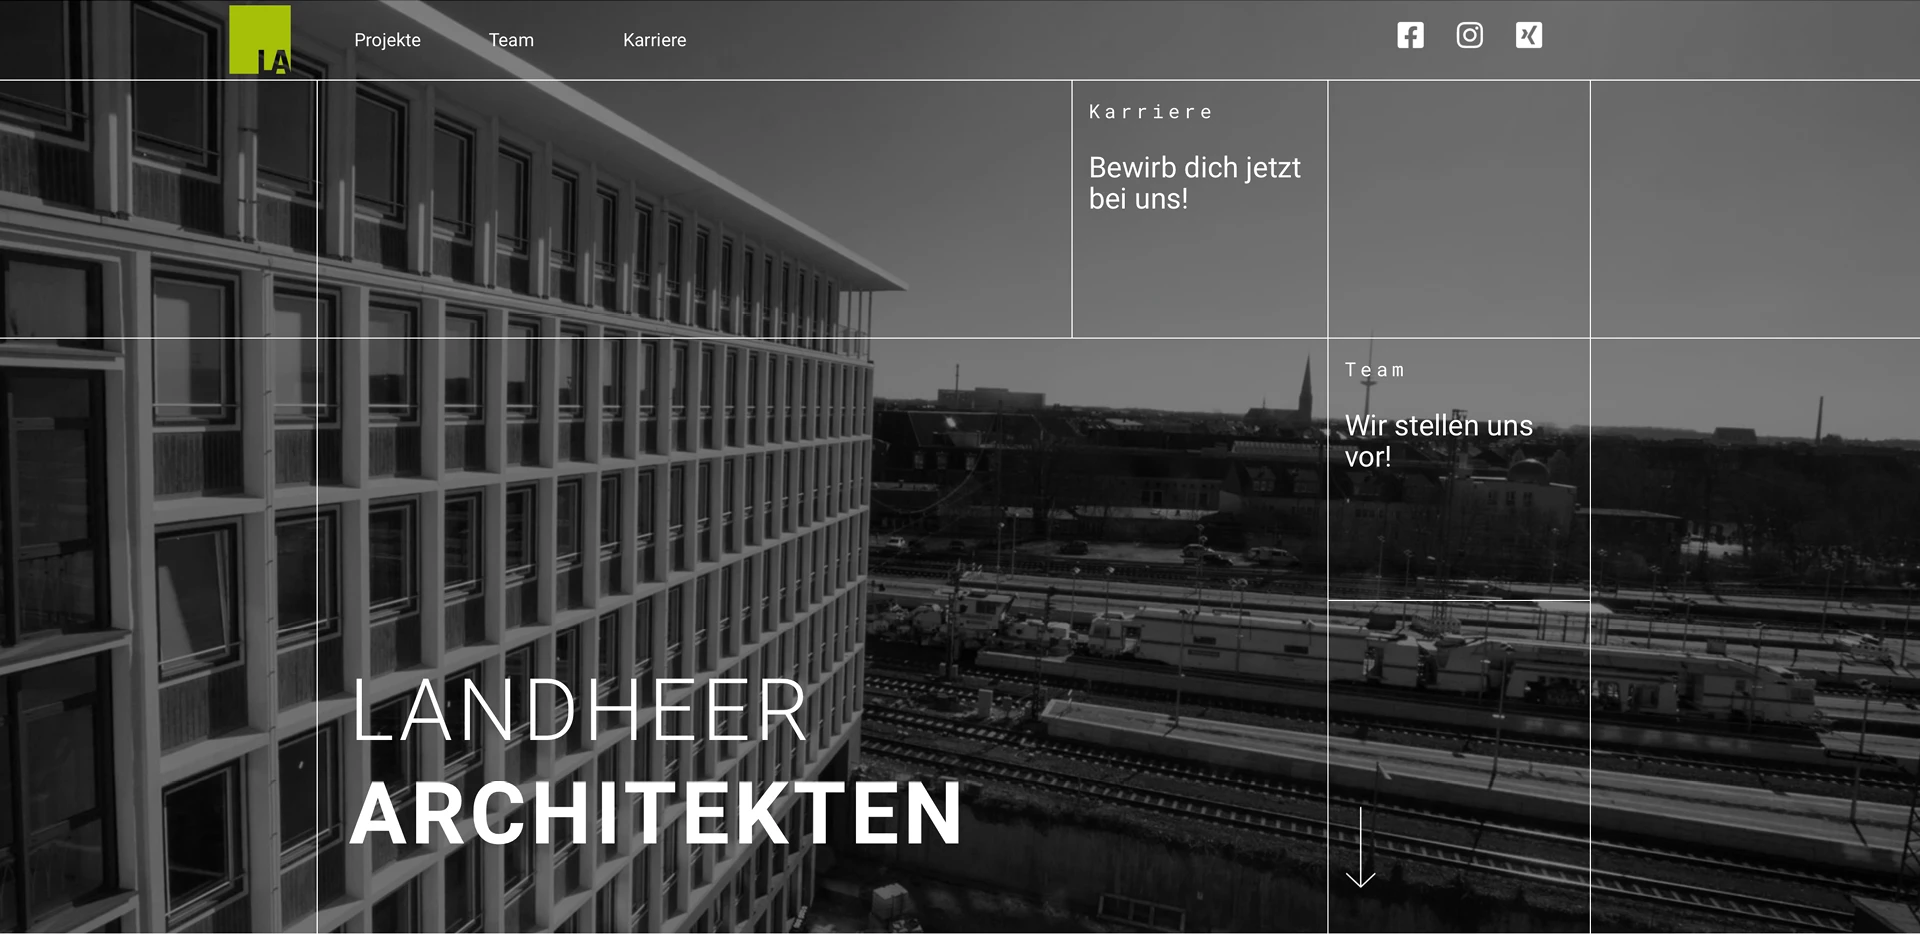 Webdesign für Architekturbüro Landheer Architekten aus Münster, Startseite